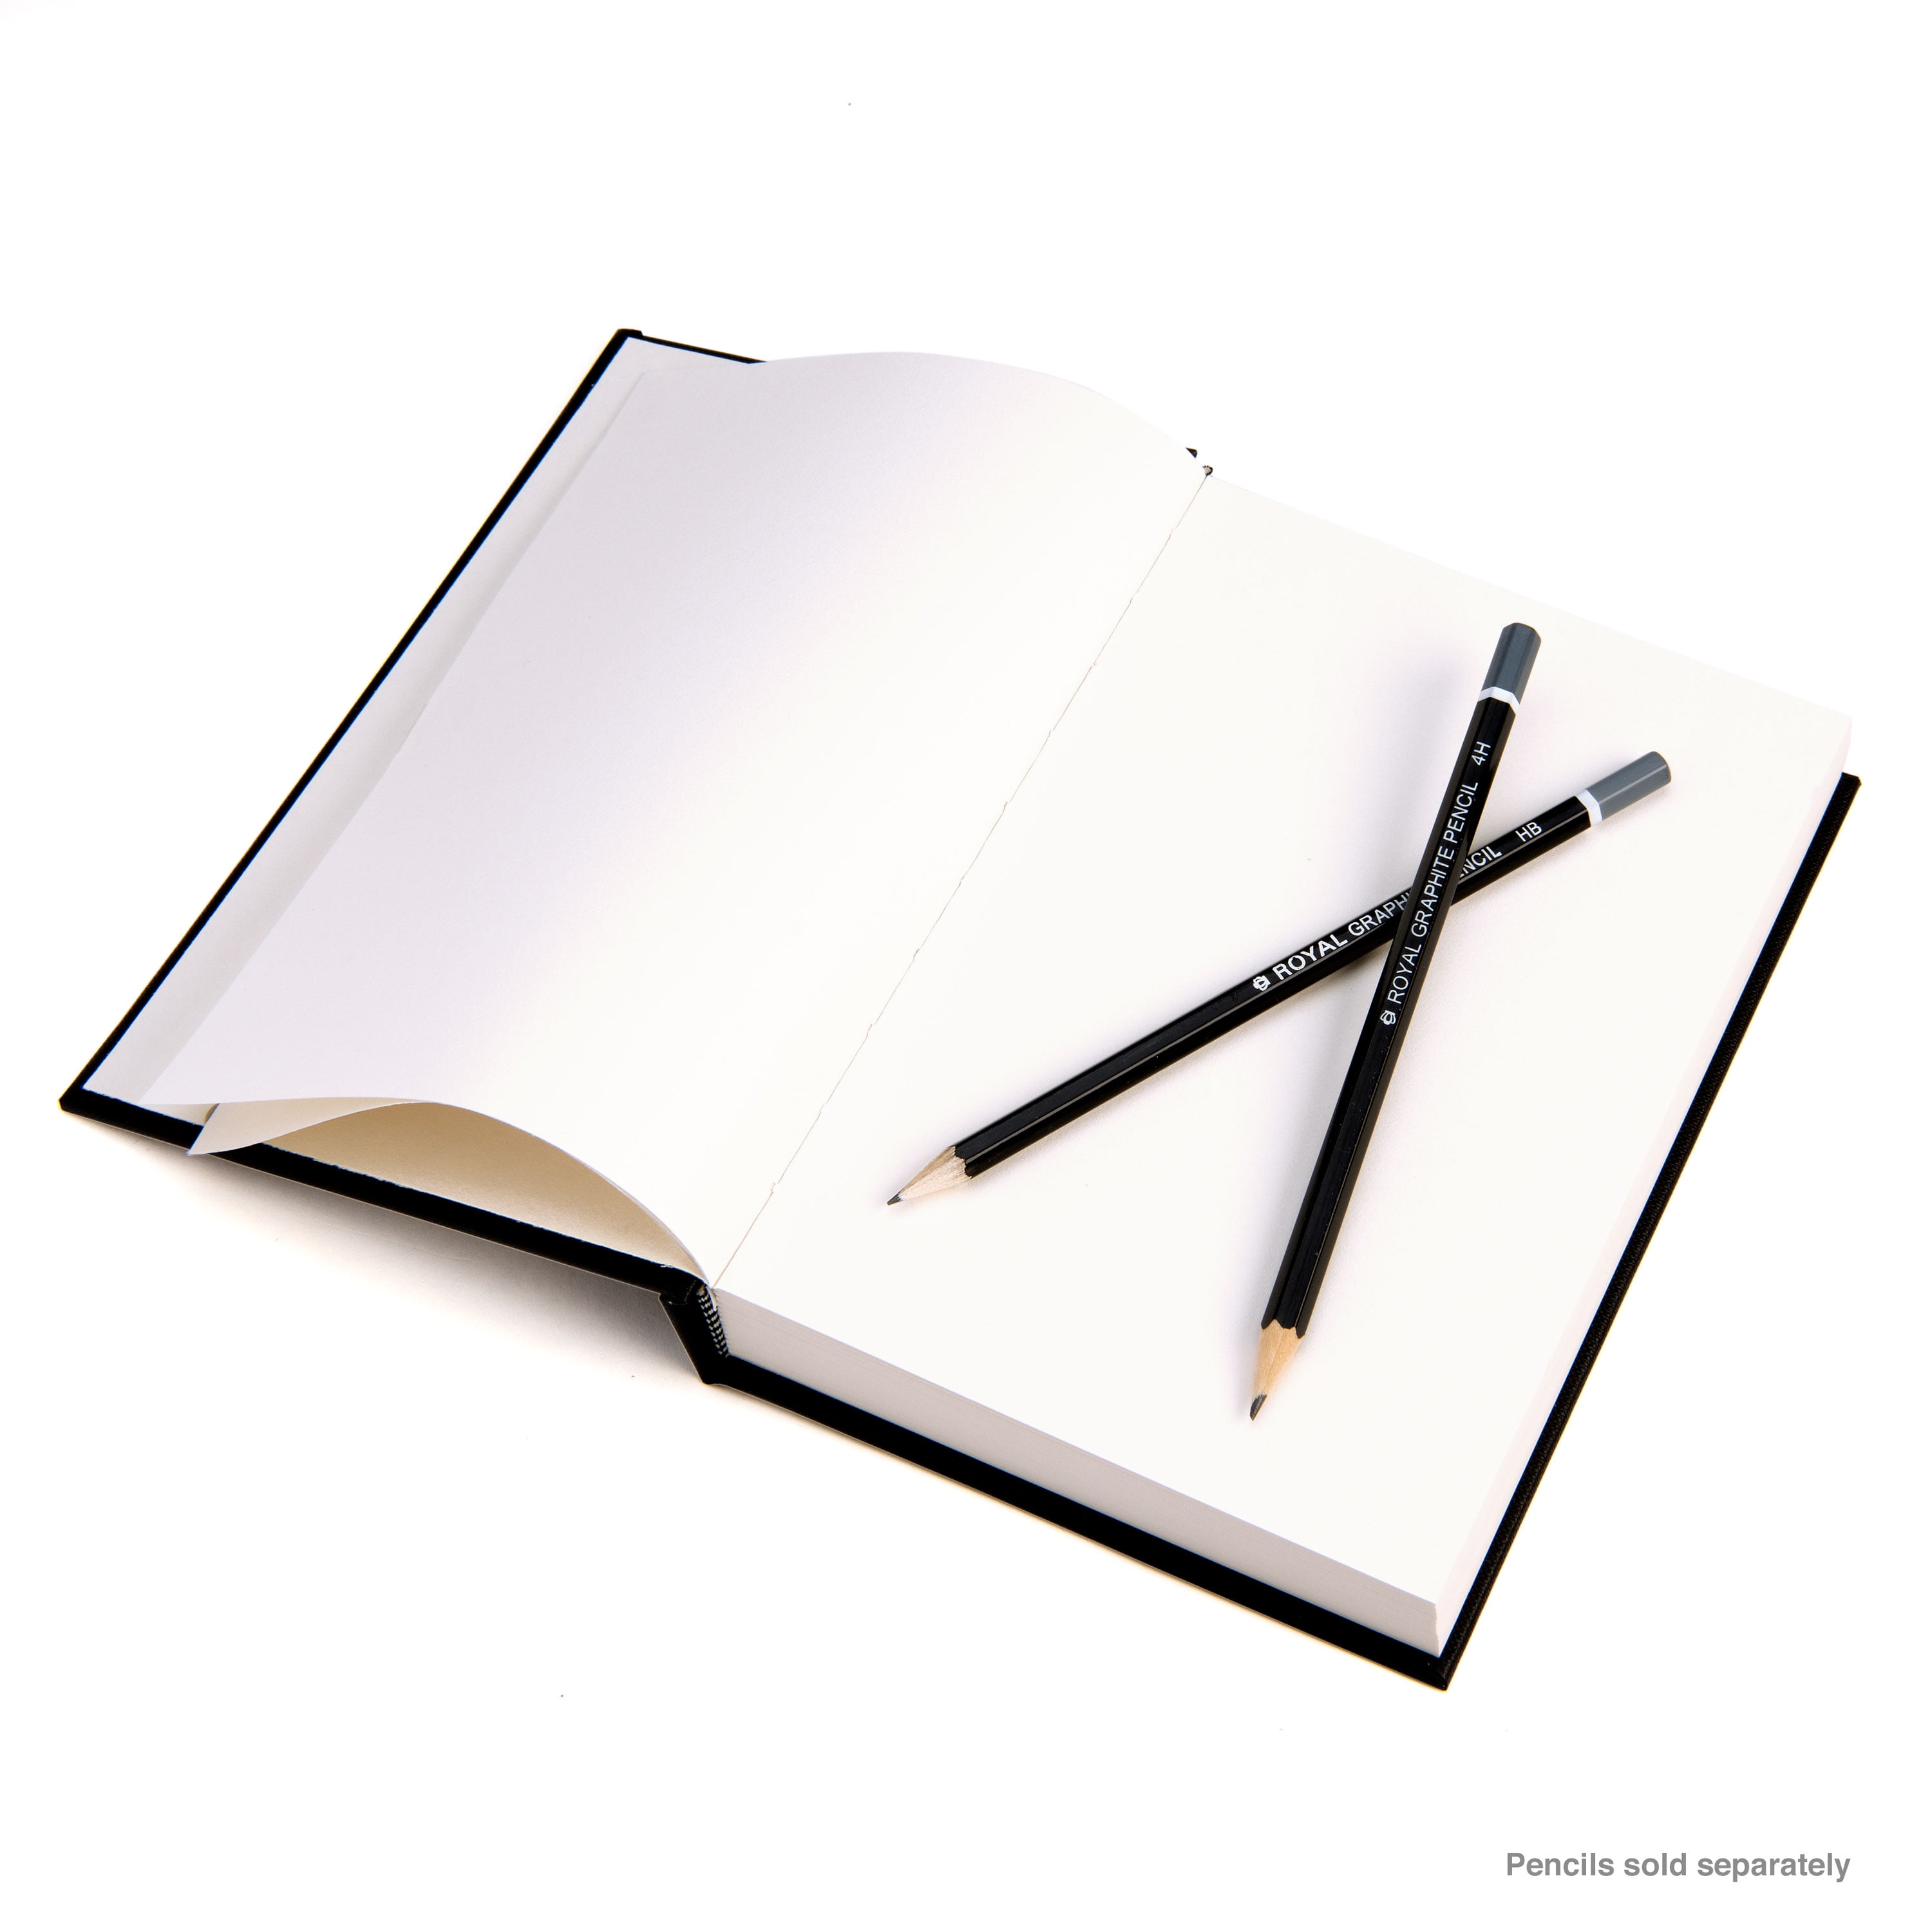 Royal & Langnickel Essentials - 8.5 x 11 110 Sheet Hardbound Artist  Sketch Book 